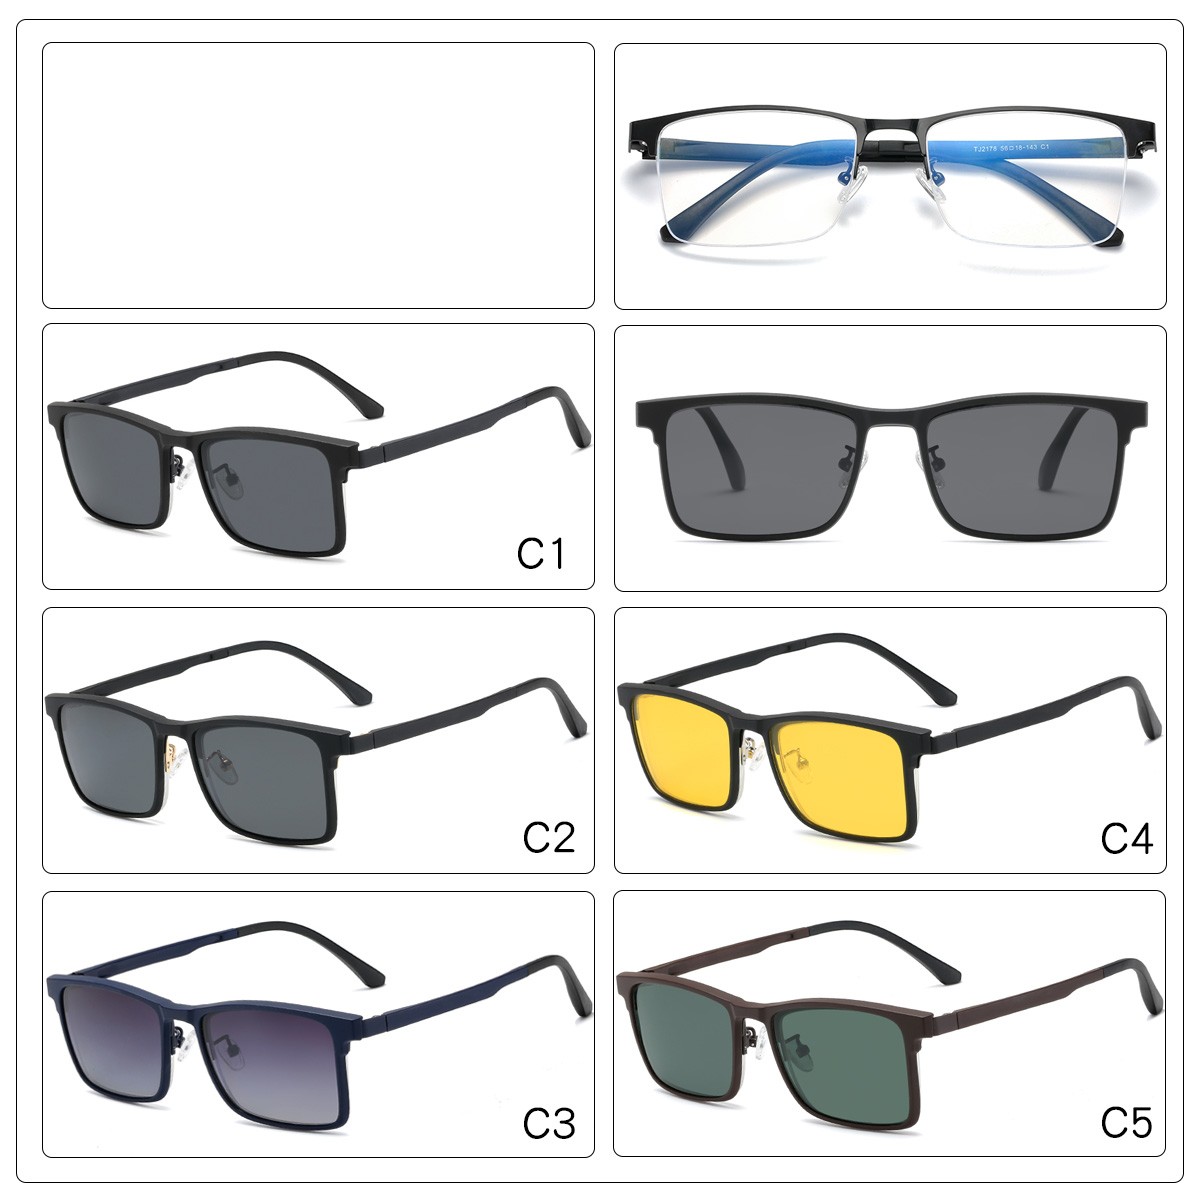 (DHTJ2178)金屬框眼鏡/可拆式太陽眼鏡/時尚套鏡